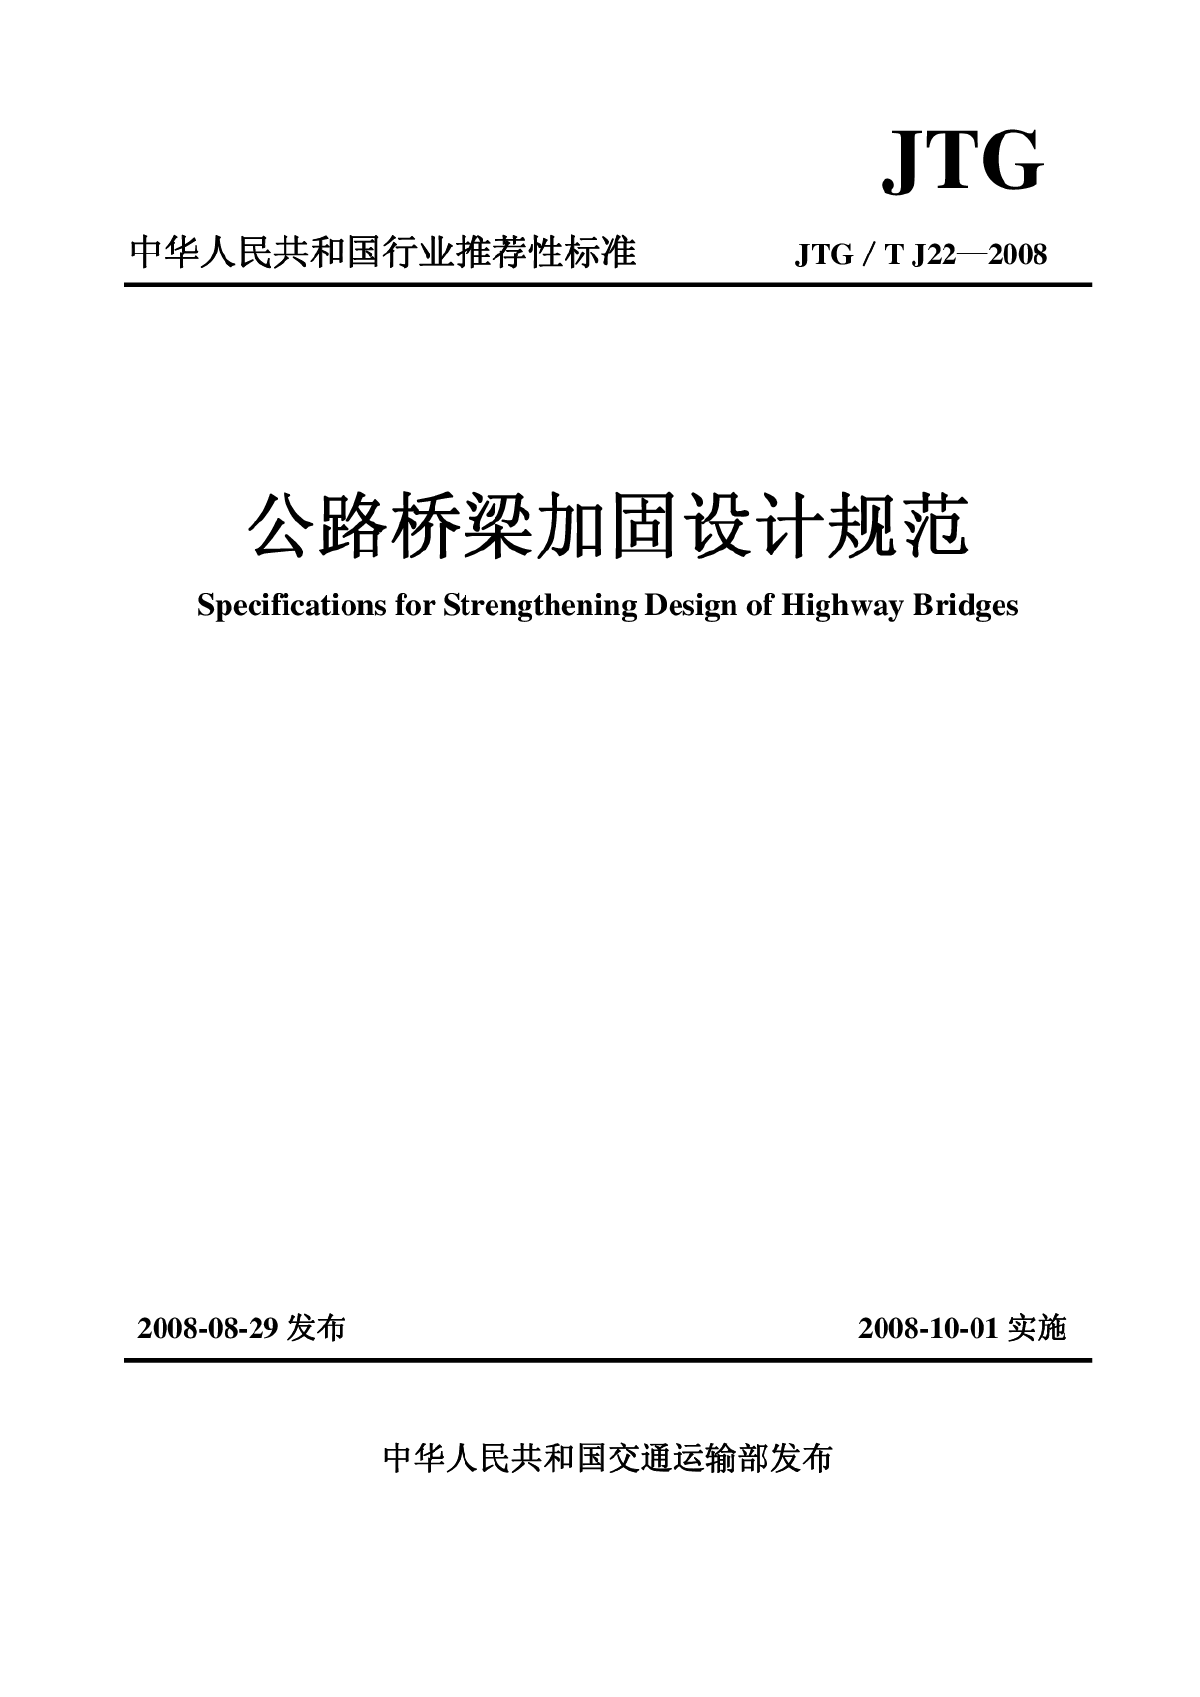 JTG∕T J22-2008 公路桥梁加固设计规范